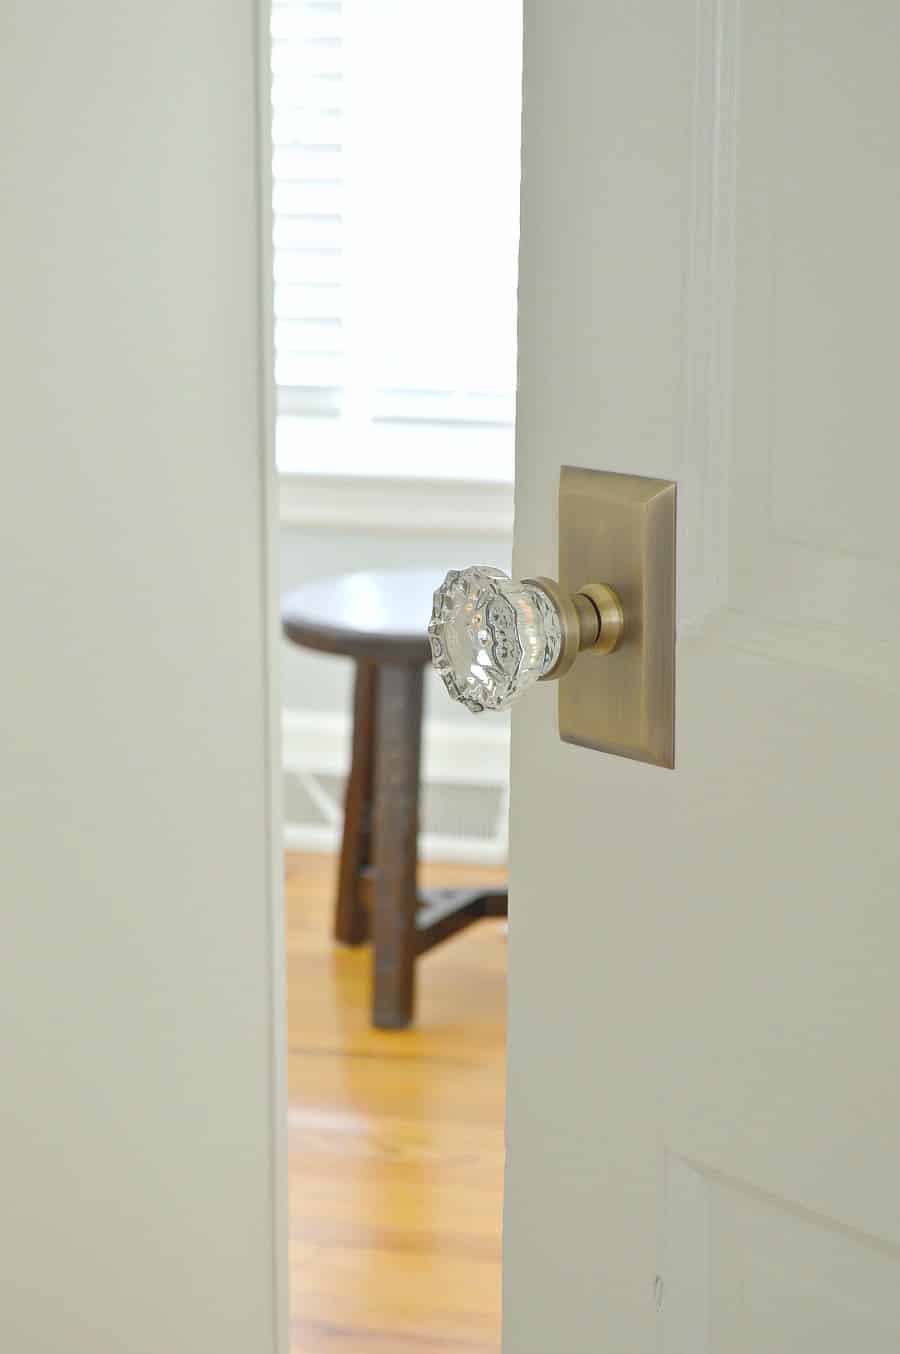 new glass door knob on the bedroom door